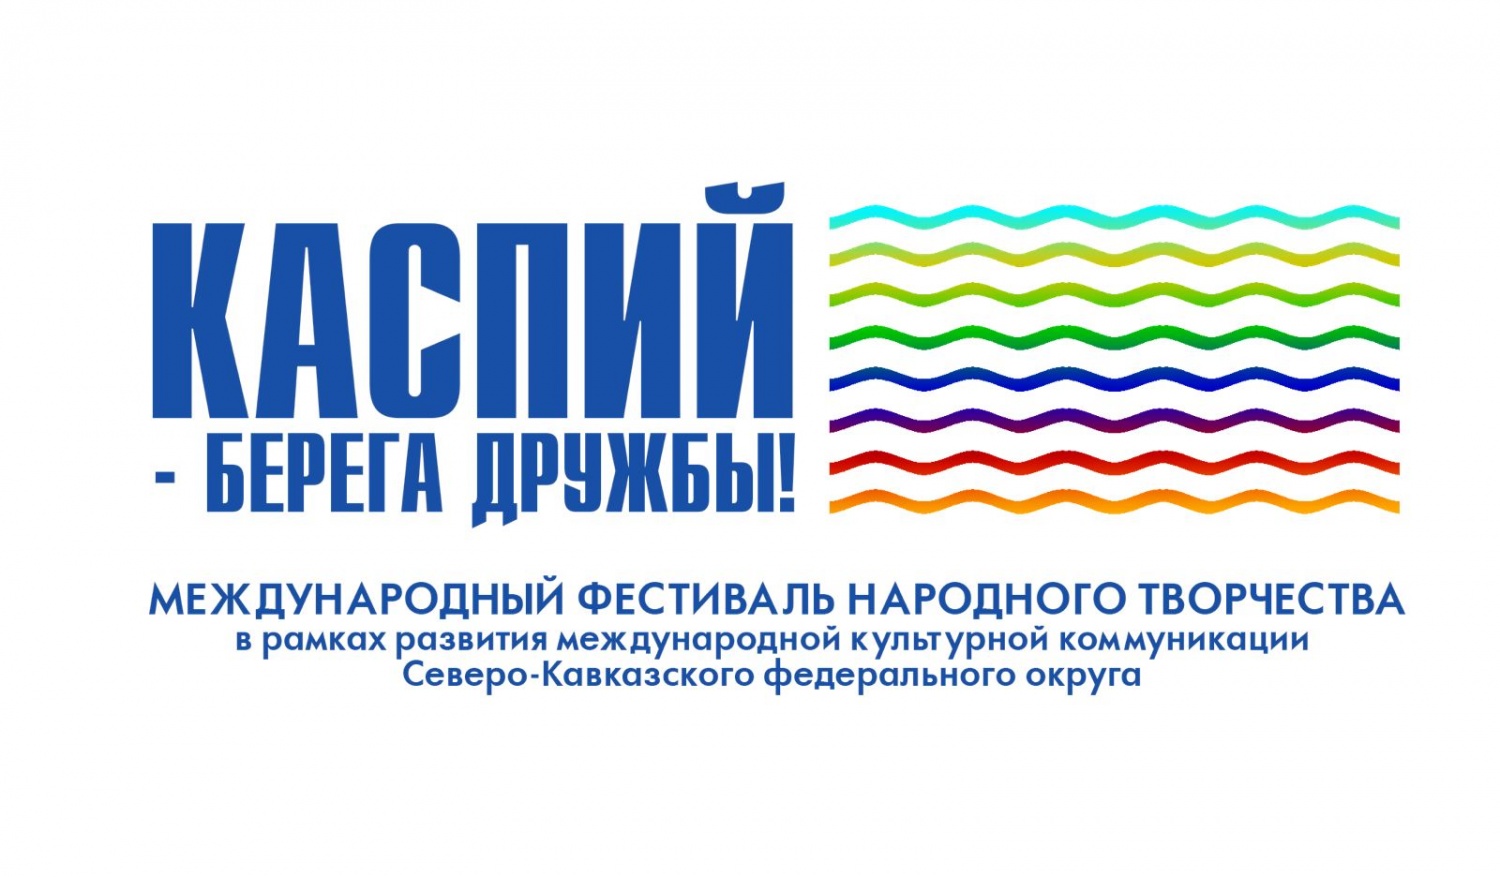 В Дагестане с 13 по 16 сентября пройдет Международный фестиваль народного творчества «Каспий – берега дружбы»